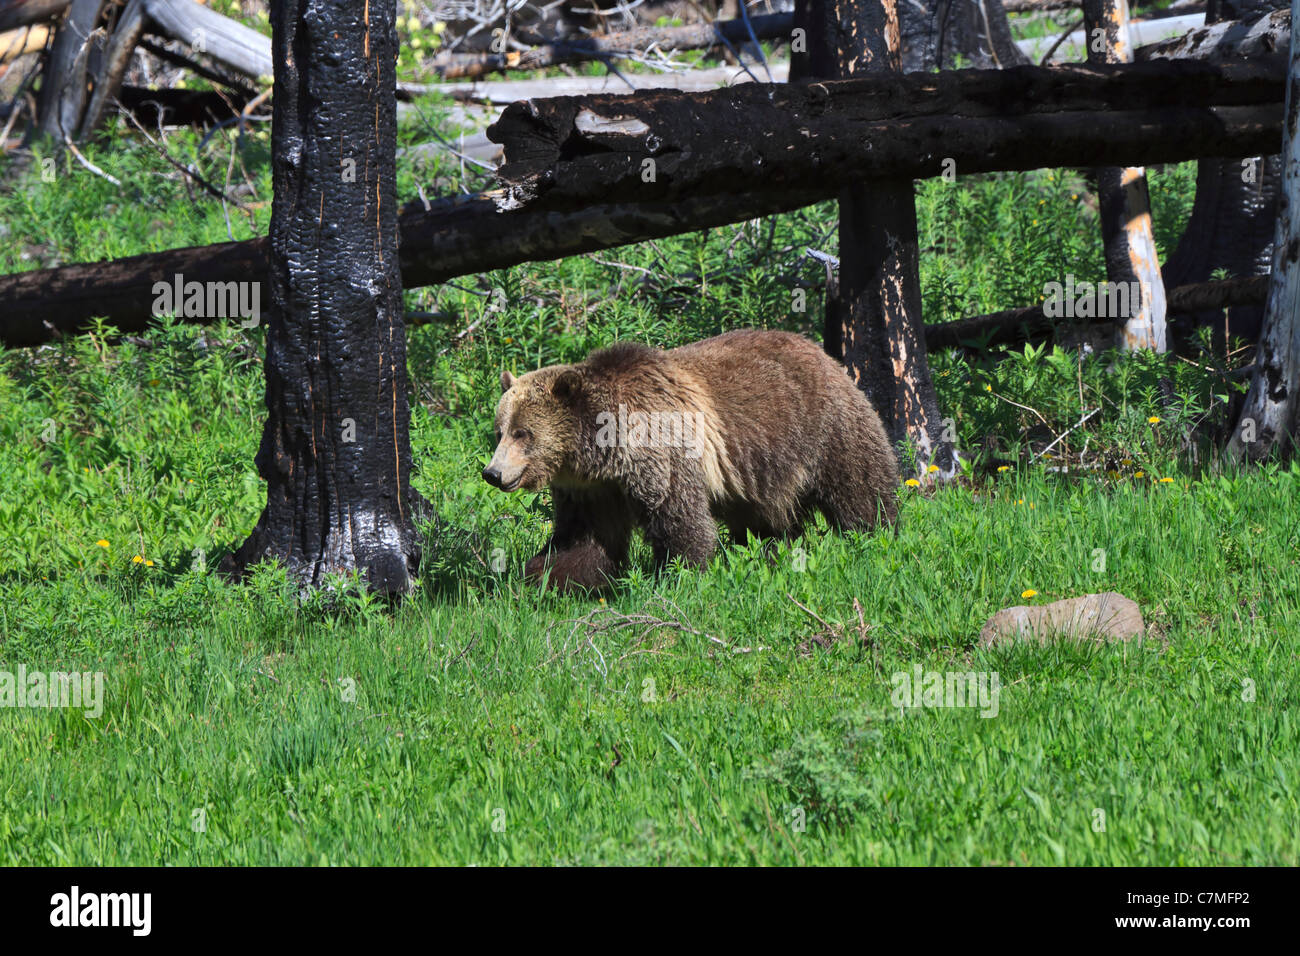 Grizzly Bear, Ursus arctos horribilis. Un oso grizzly en una zona de regeneración de incendios forestales en el Parque Nacional Yellowstone, a finales de primavera. Foto de stock